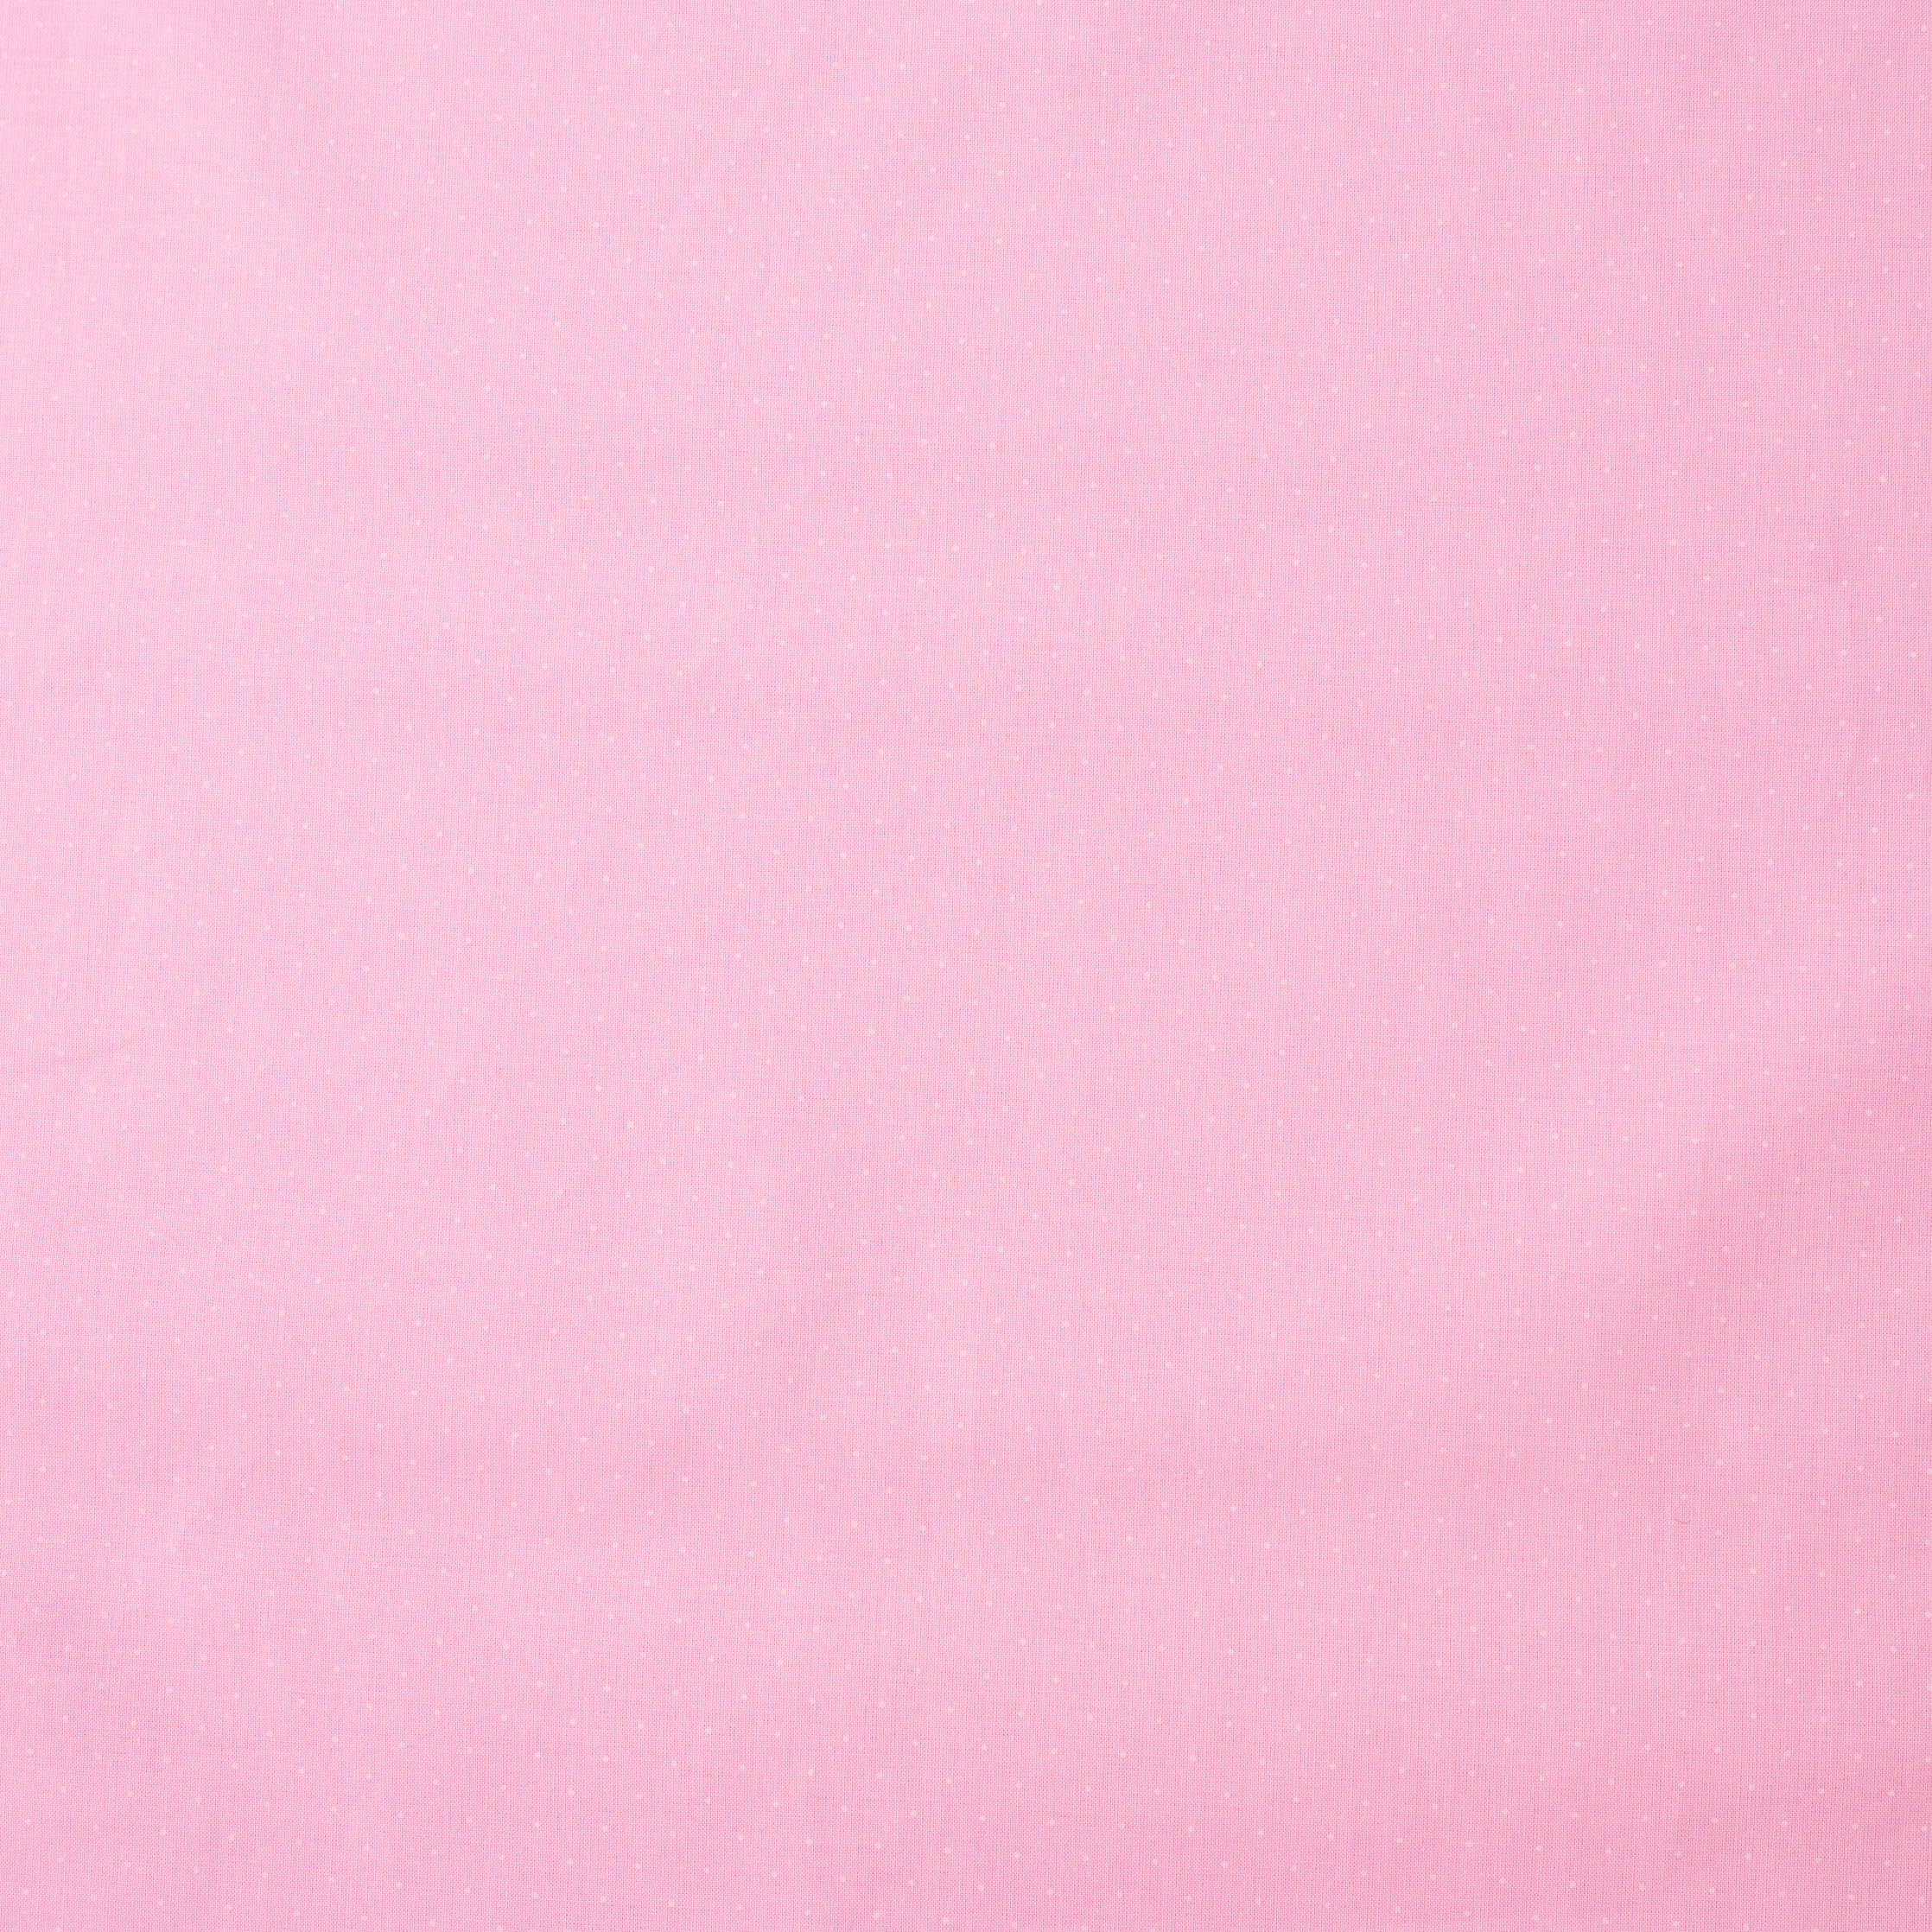 Trachtenstoff Baumwolle getupft Rosa Weiß 0,5m